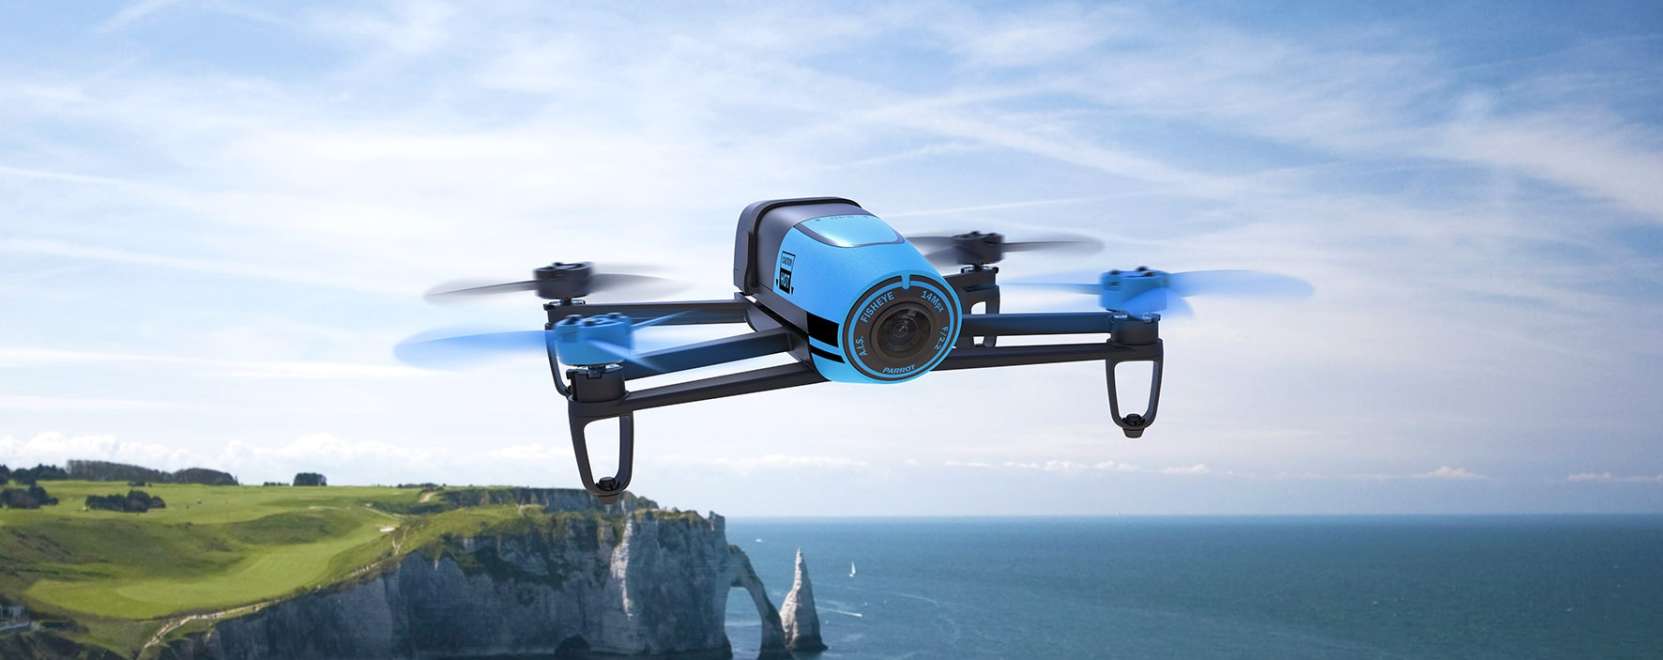 Floppylemez helyett drón – Így repül a Parrot 